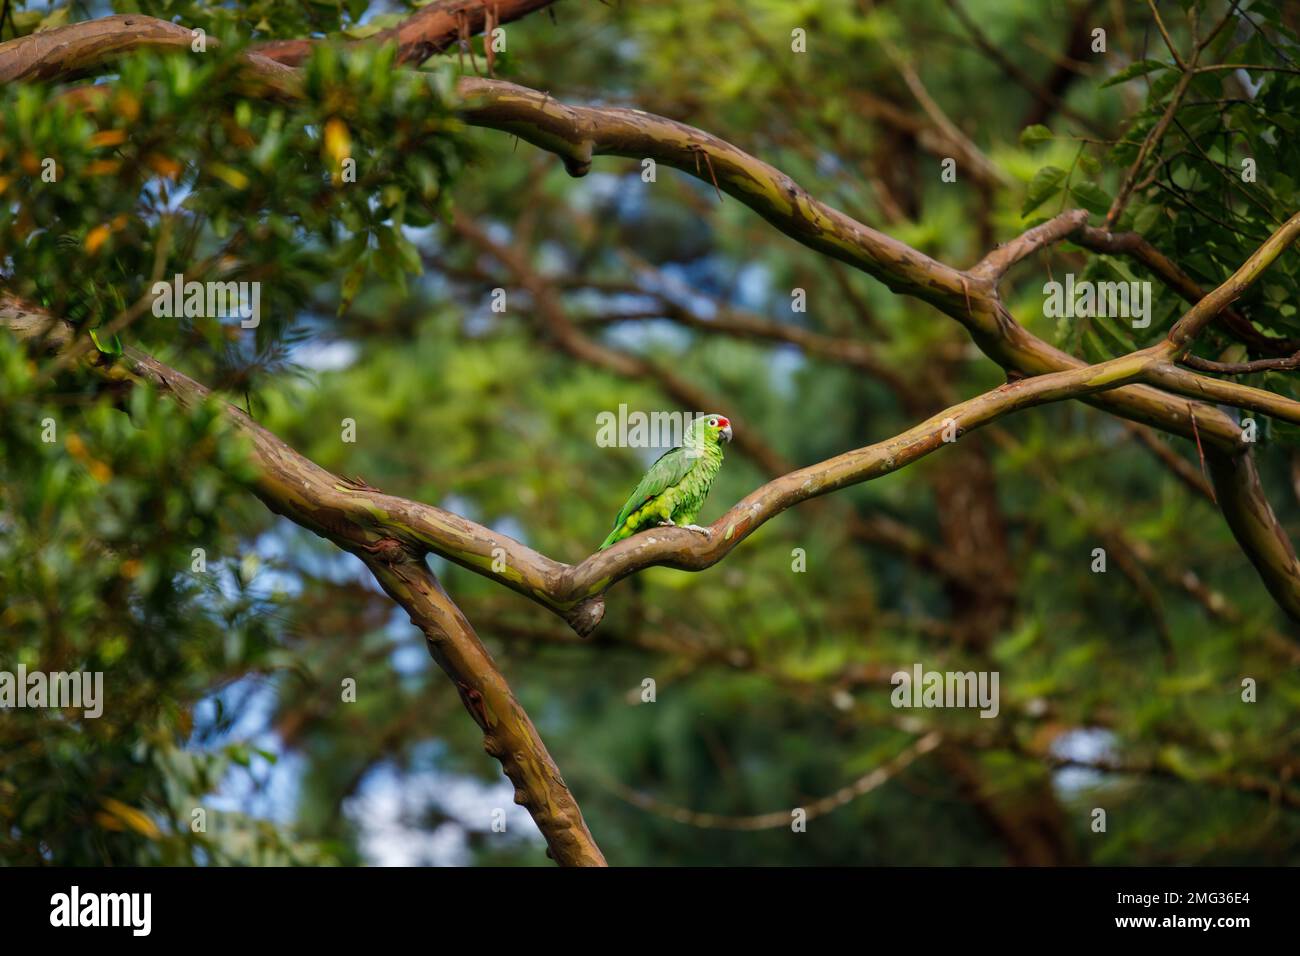 amazonie rouge ou perroquet rouge (Amazona autumnalis) dans les arbres de la Loge de l'Observatoire Arenal, Parc national du volcan Arenal, Costa Rica. Banque D'Images